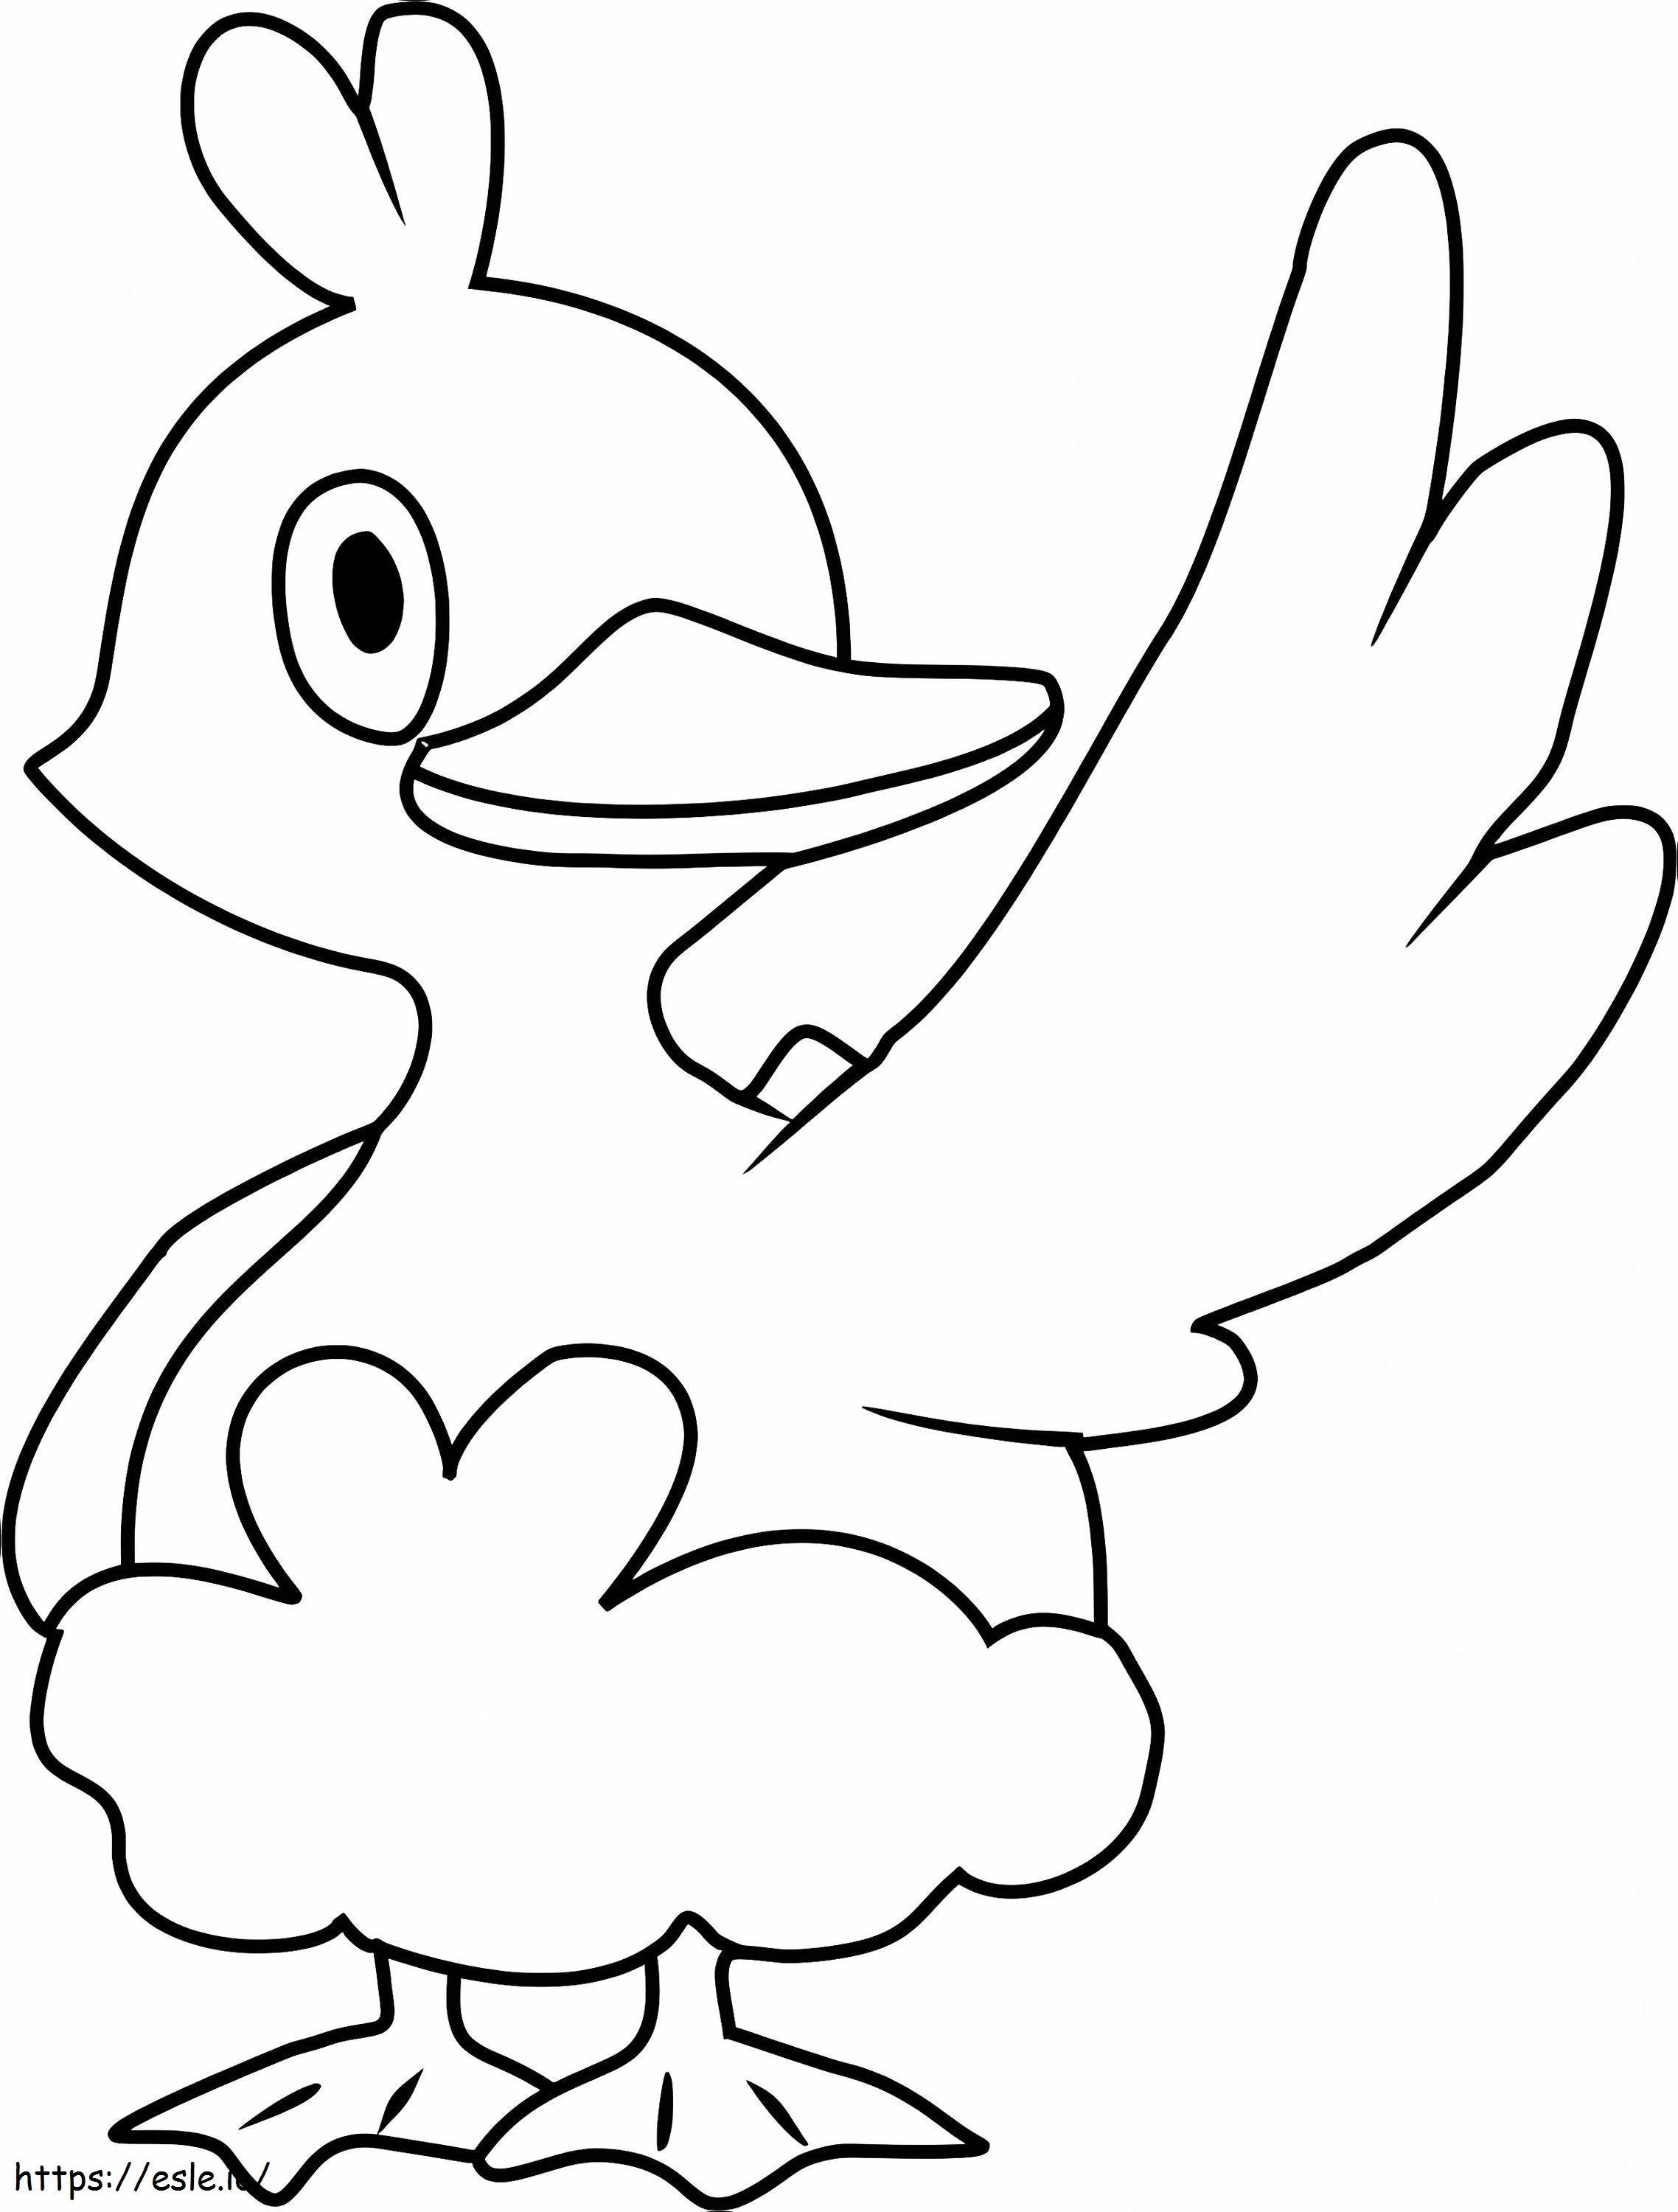 Ducklett Gen 5 Pokémon ausmalbilder